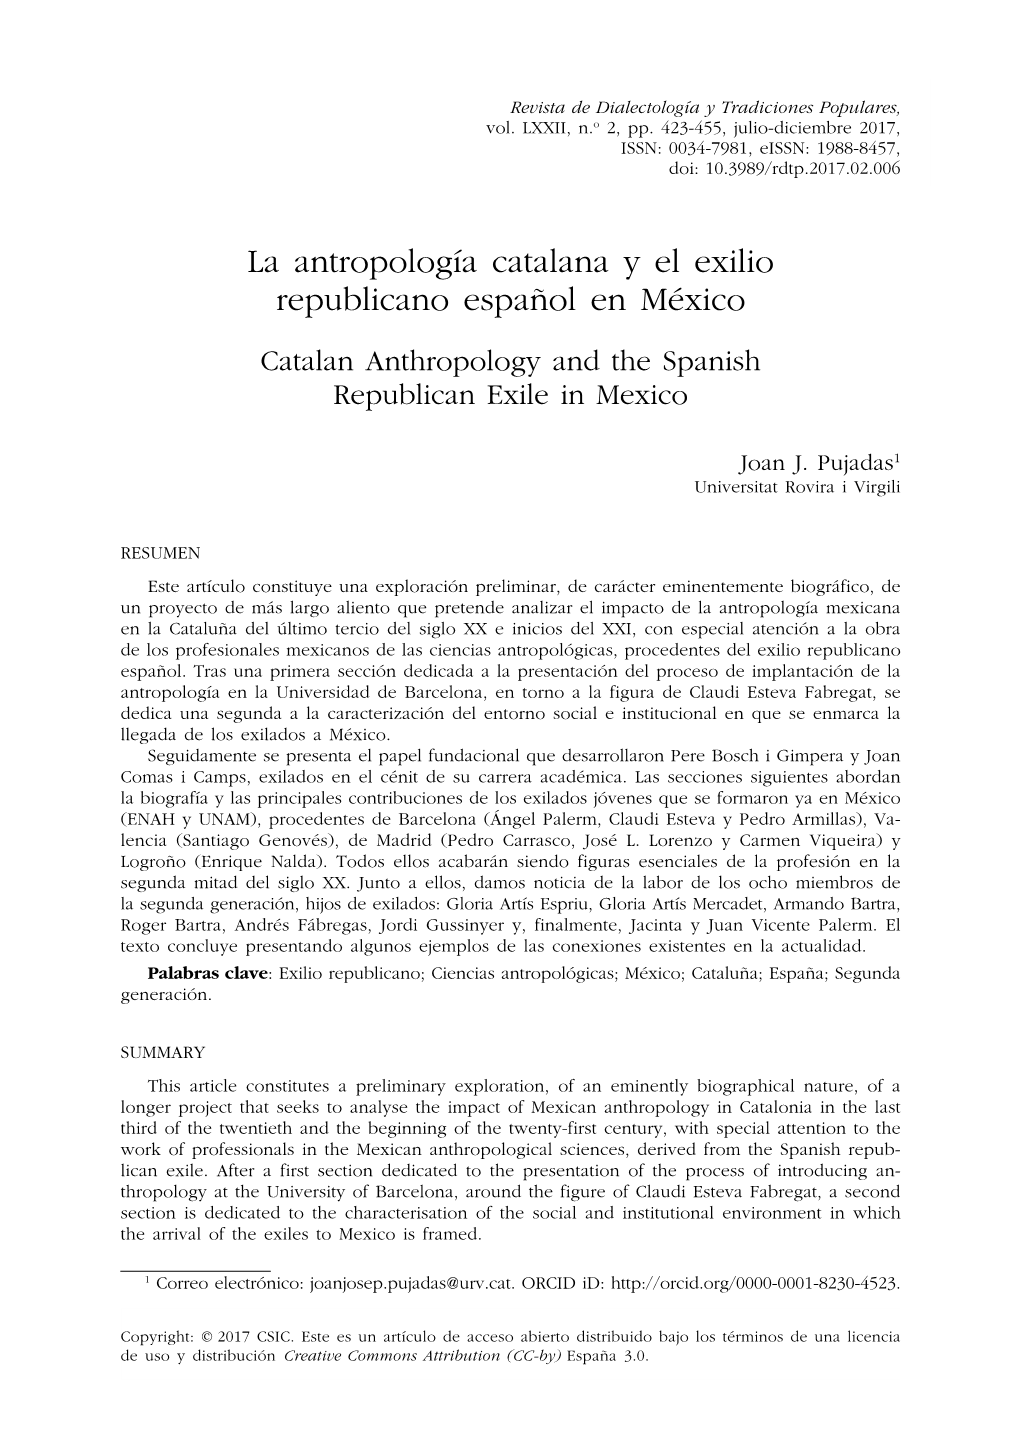 La Antropología Catalana Y El Exilio Republicano Español En México Catalan Anthropology and the Spanish Republican Exile in Mexico